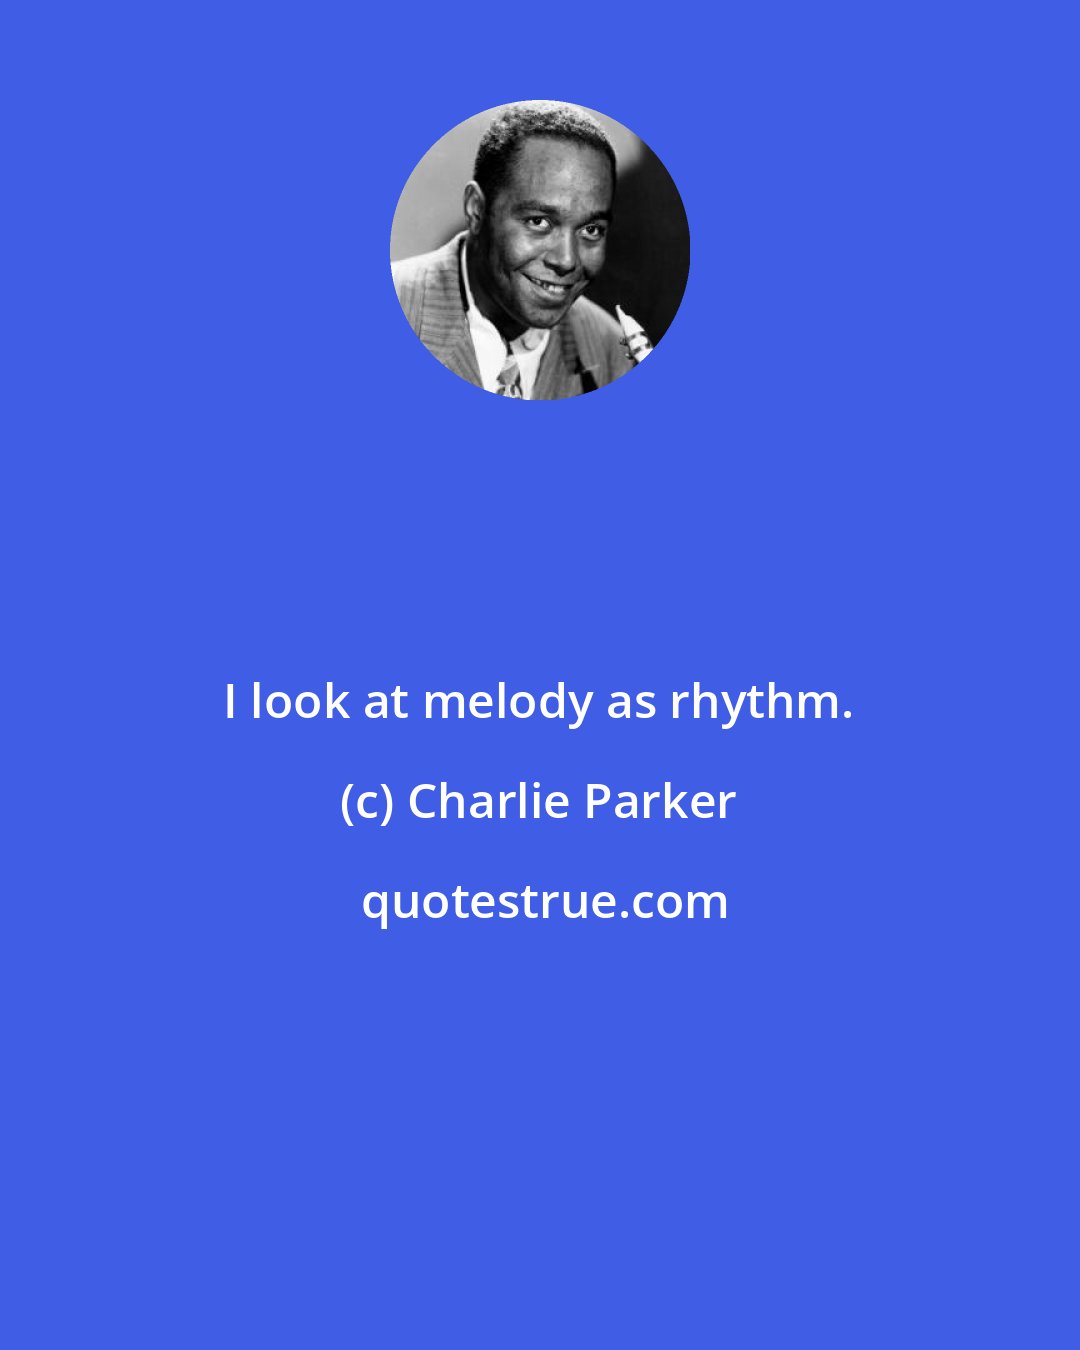 Charlie Parker: I look at melody as rhythm.